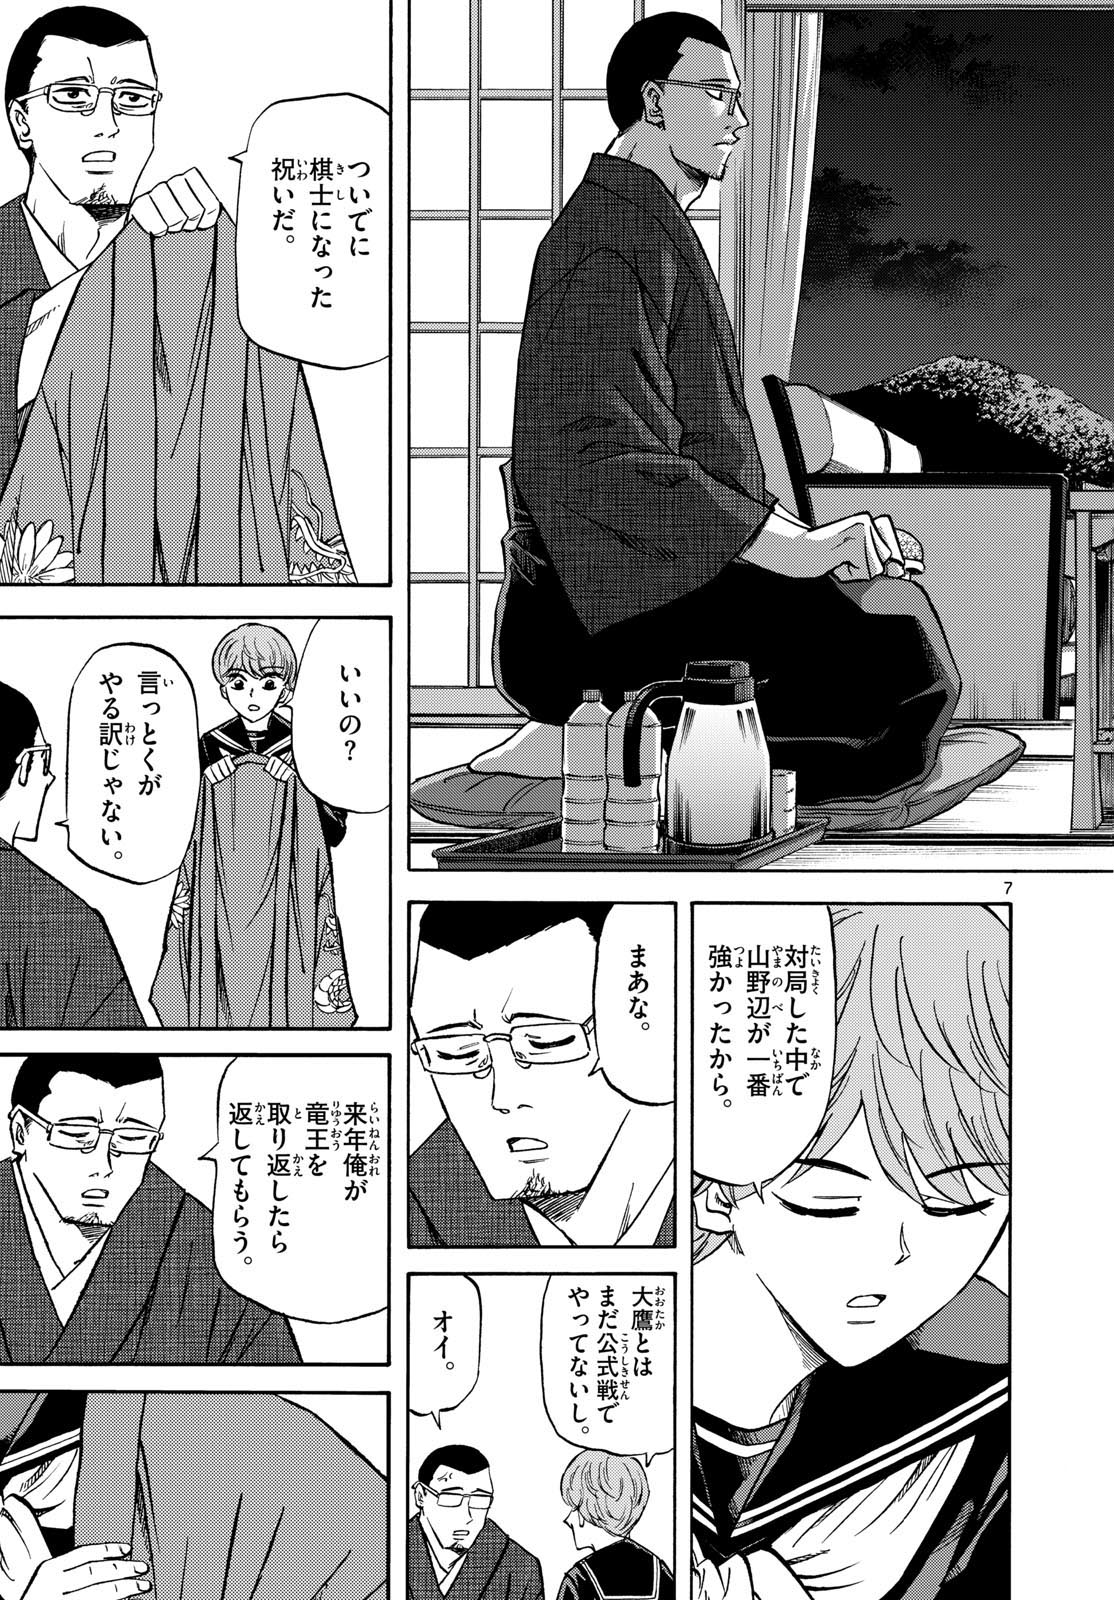 Tatsu to Ichigo - Chapter 180 - Page 7